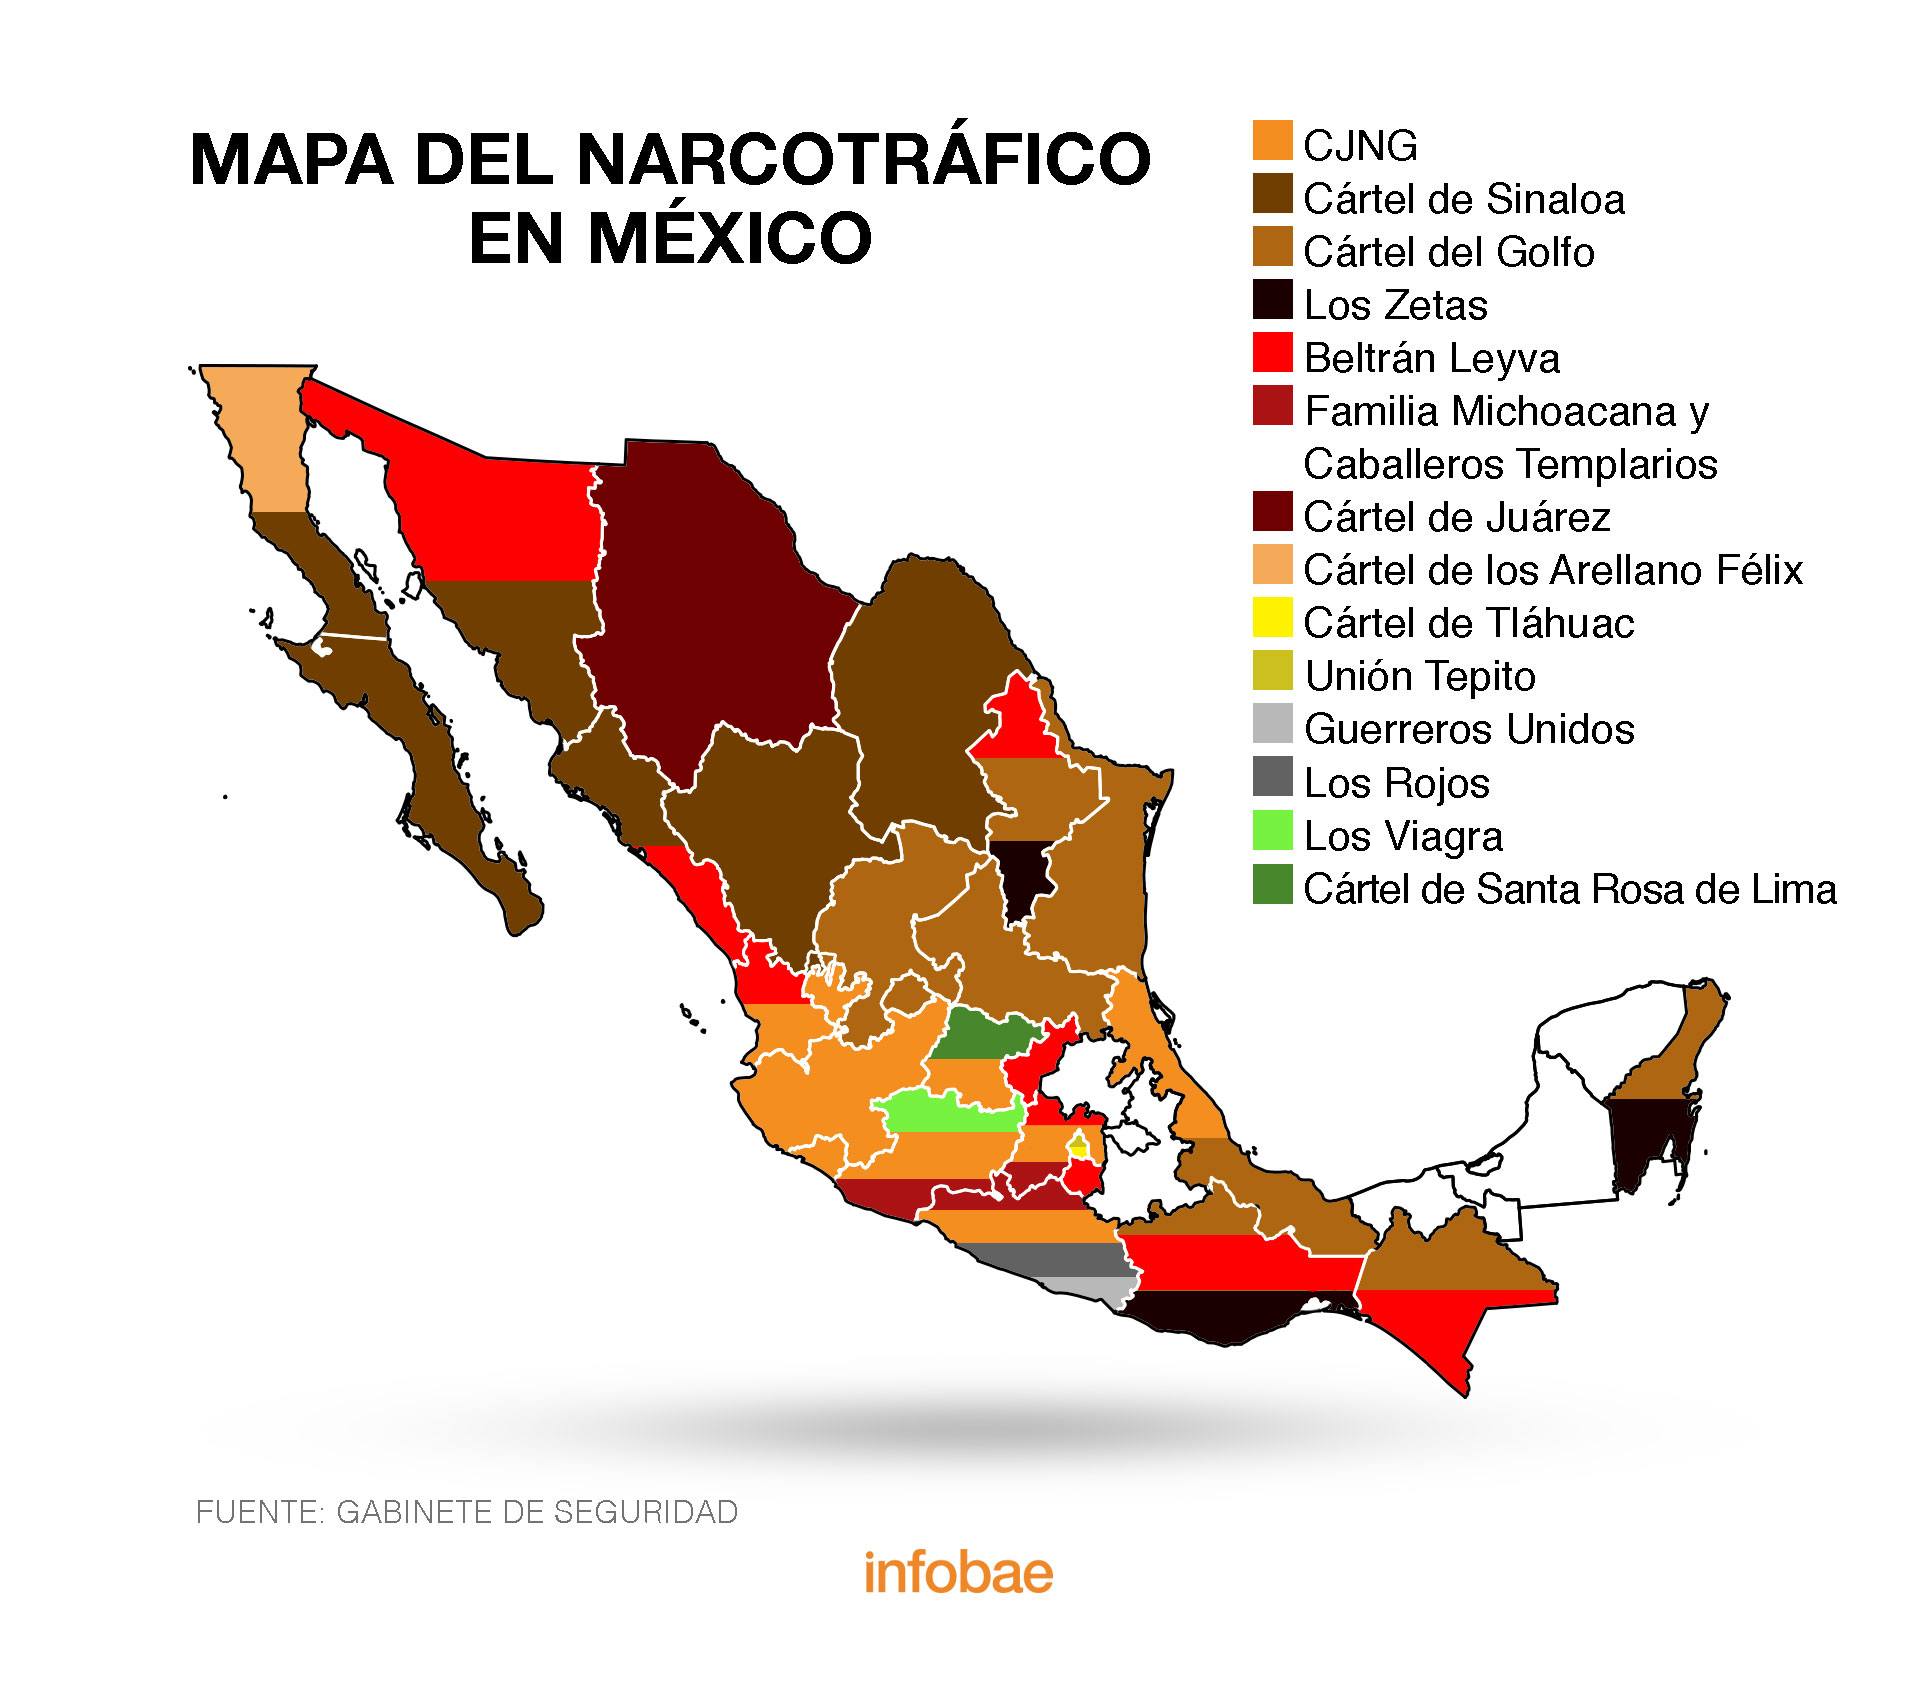 ¿Qué carteles siguen activos en México